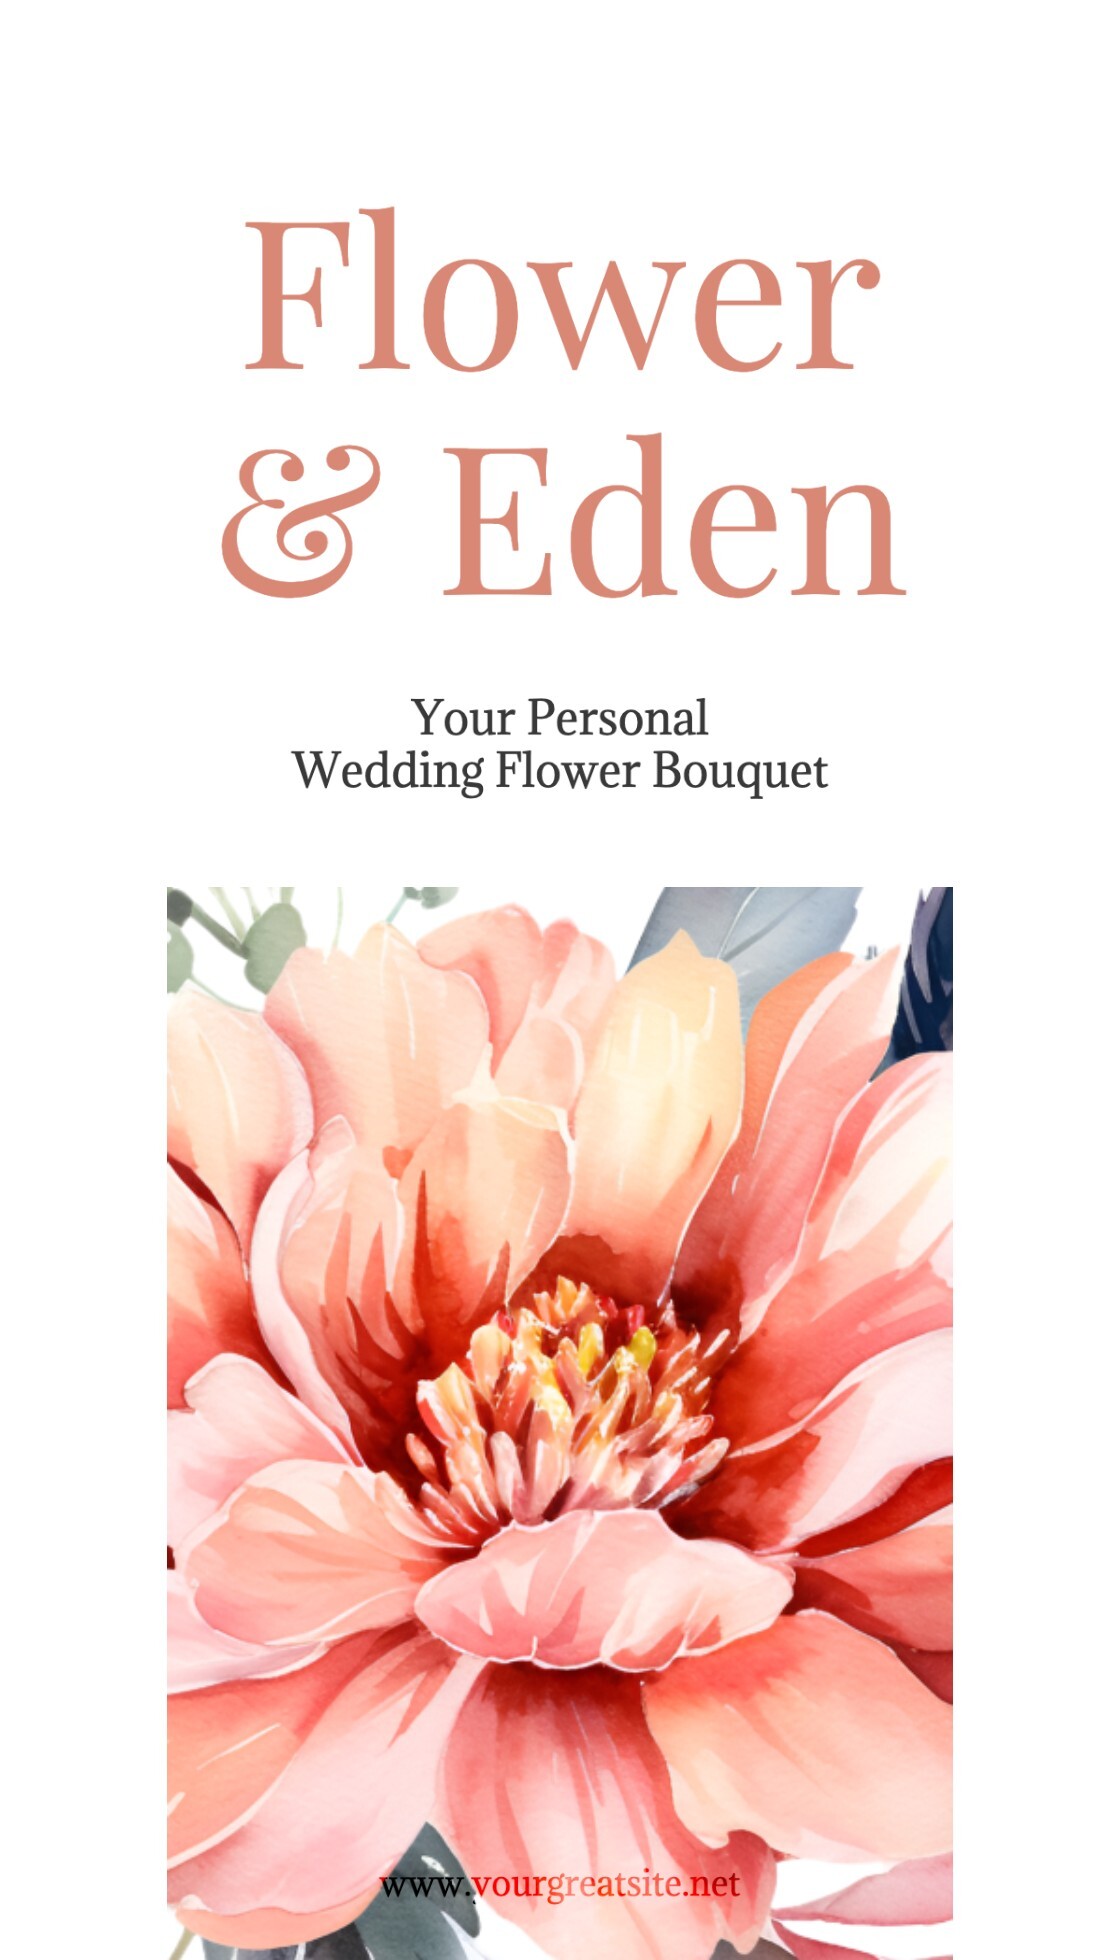 Wedding Flower Bouquet Business Card Template